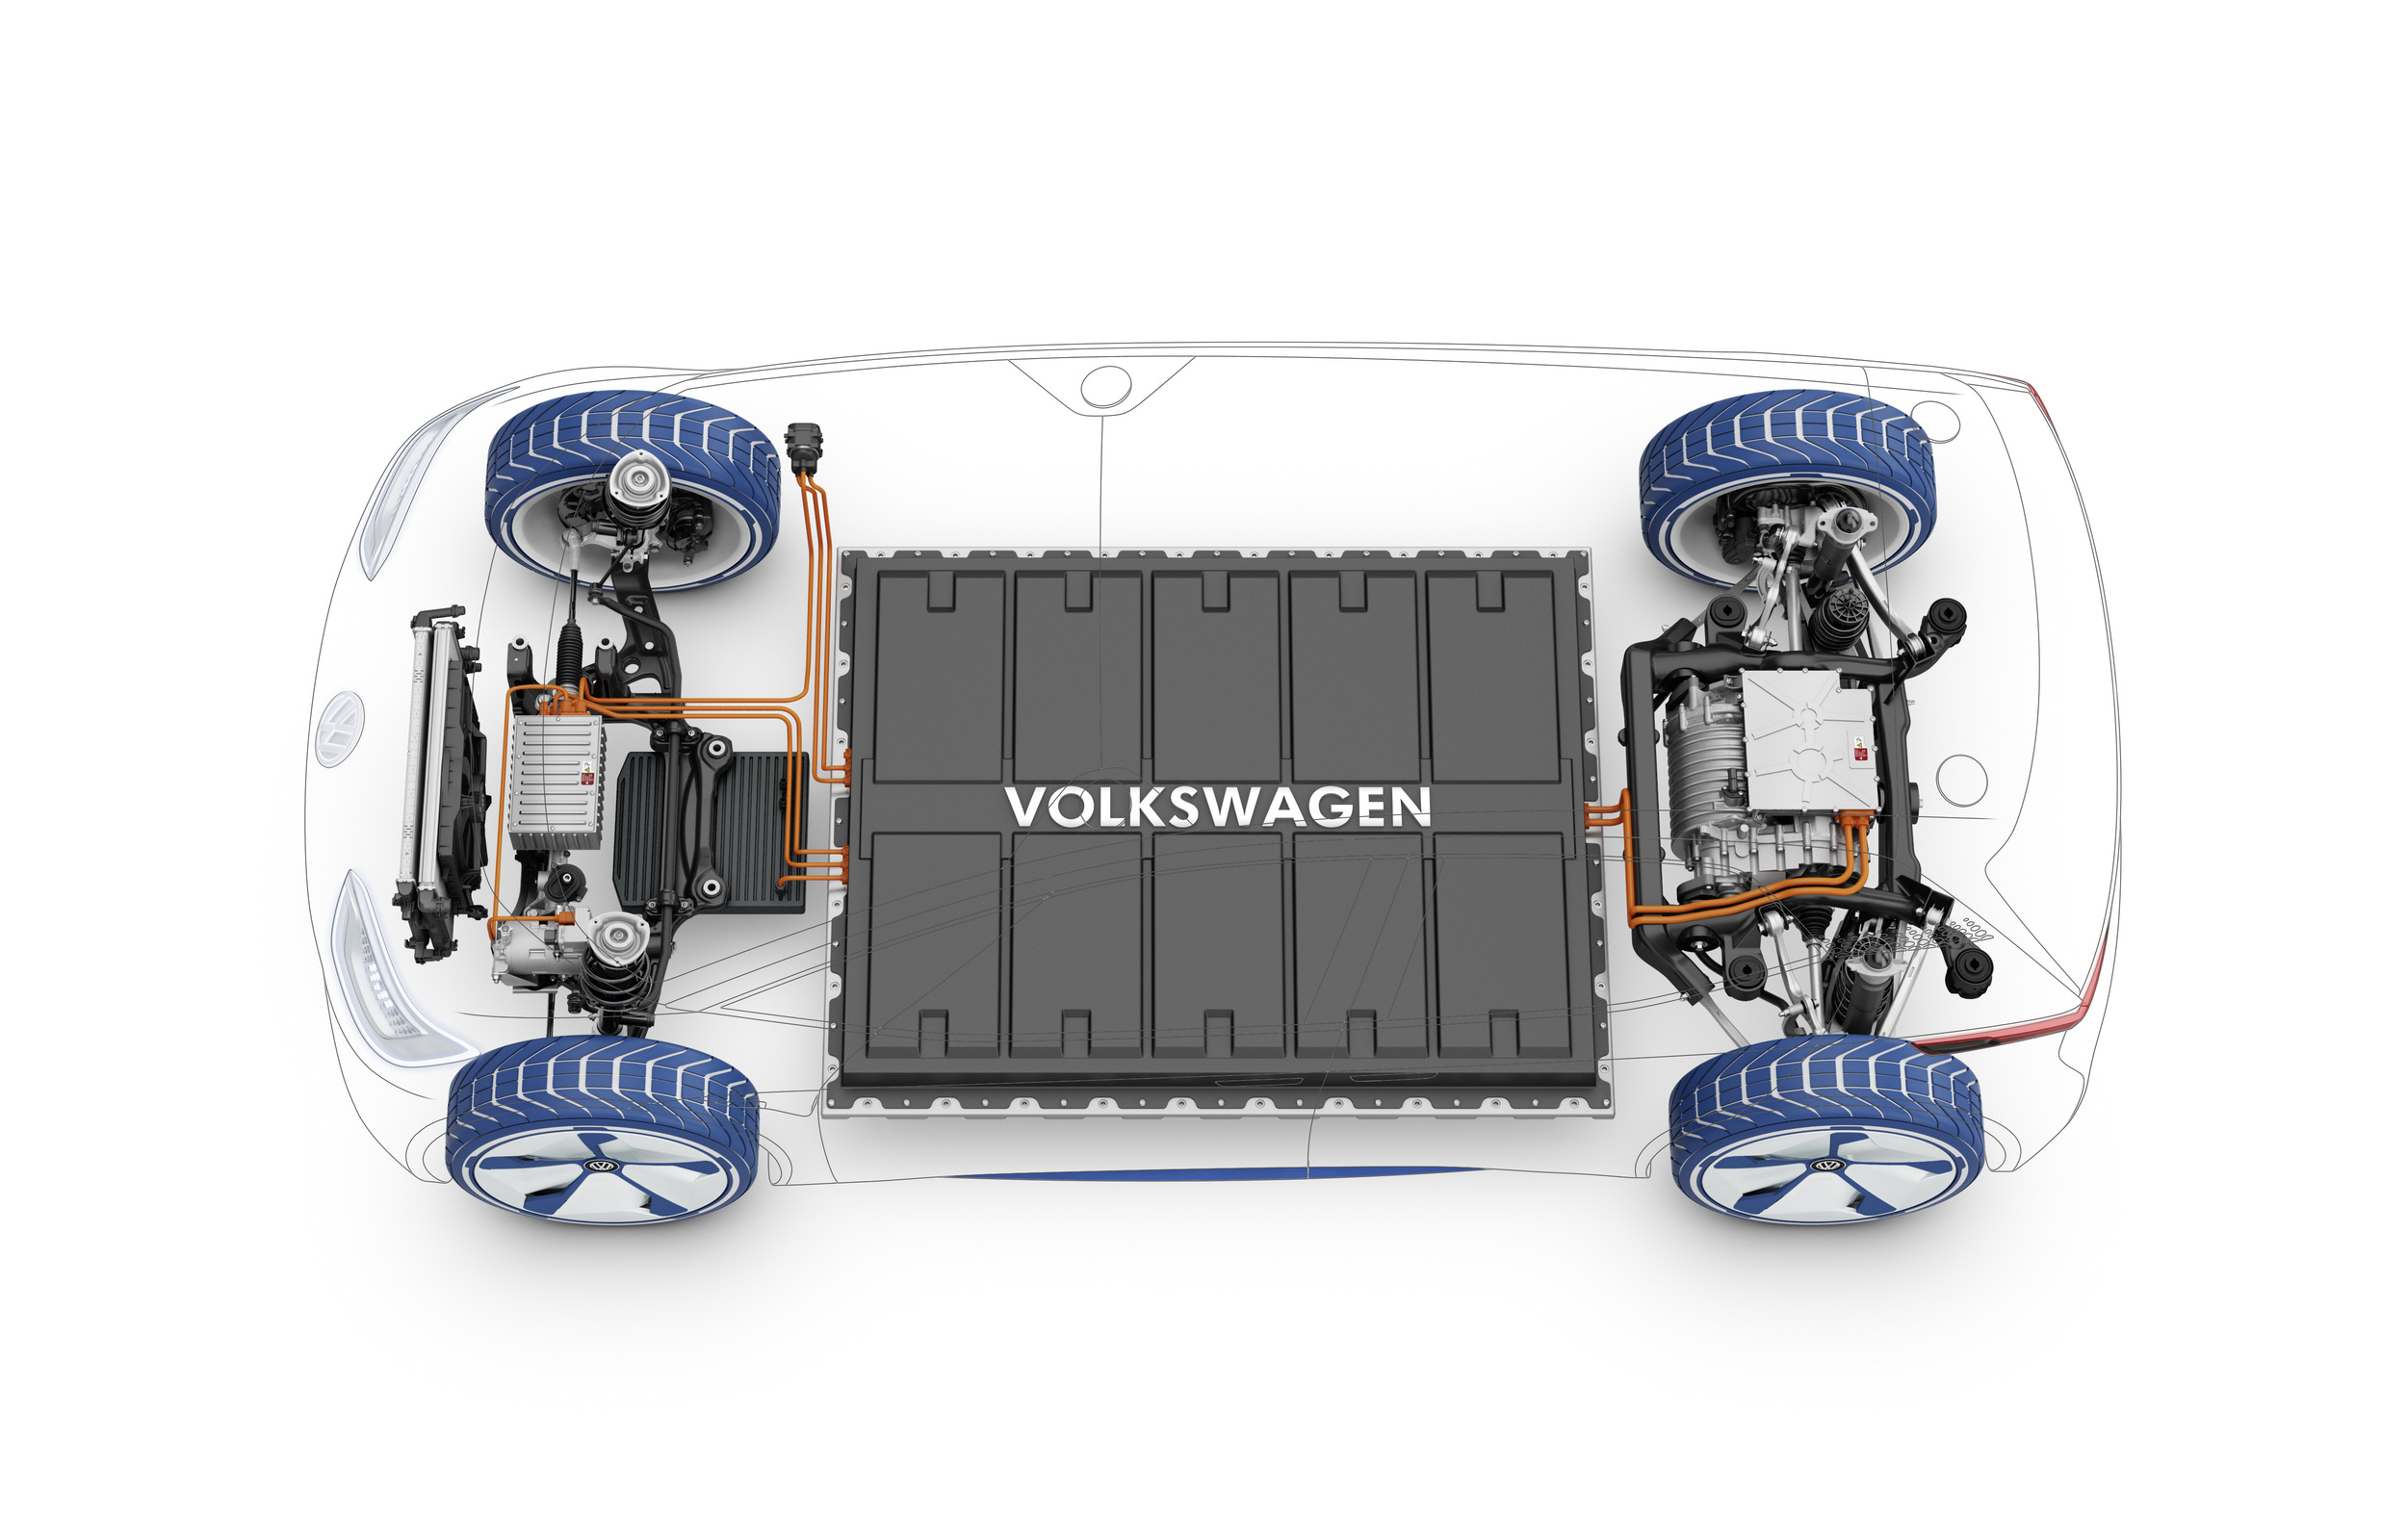 Volkswagen I.D. Concept, 2016